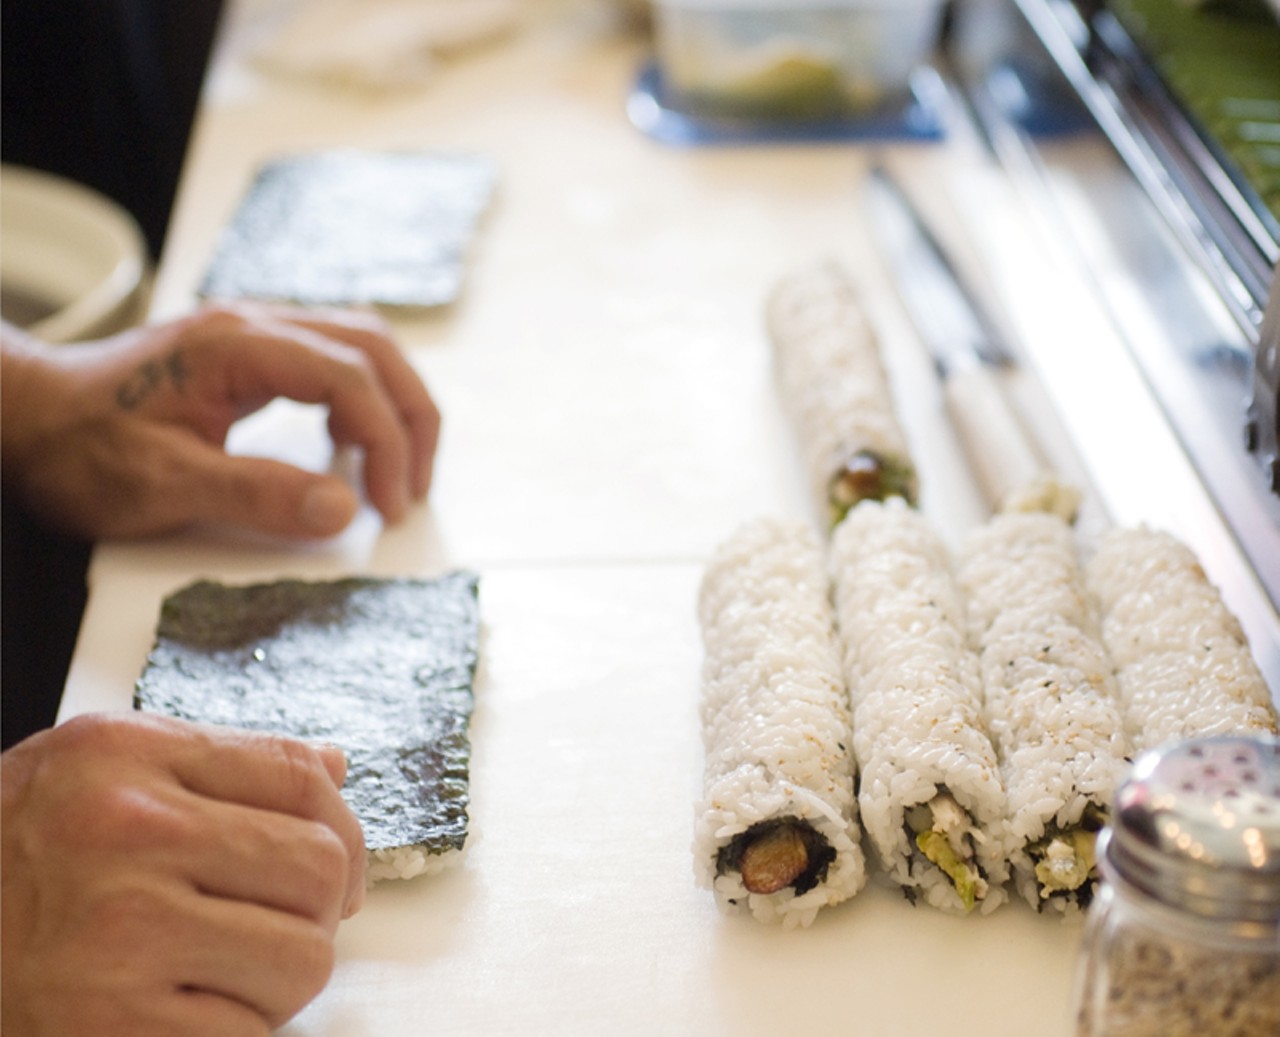 Preparing sushi rolls.